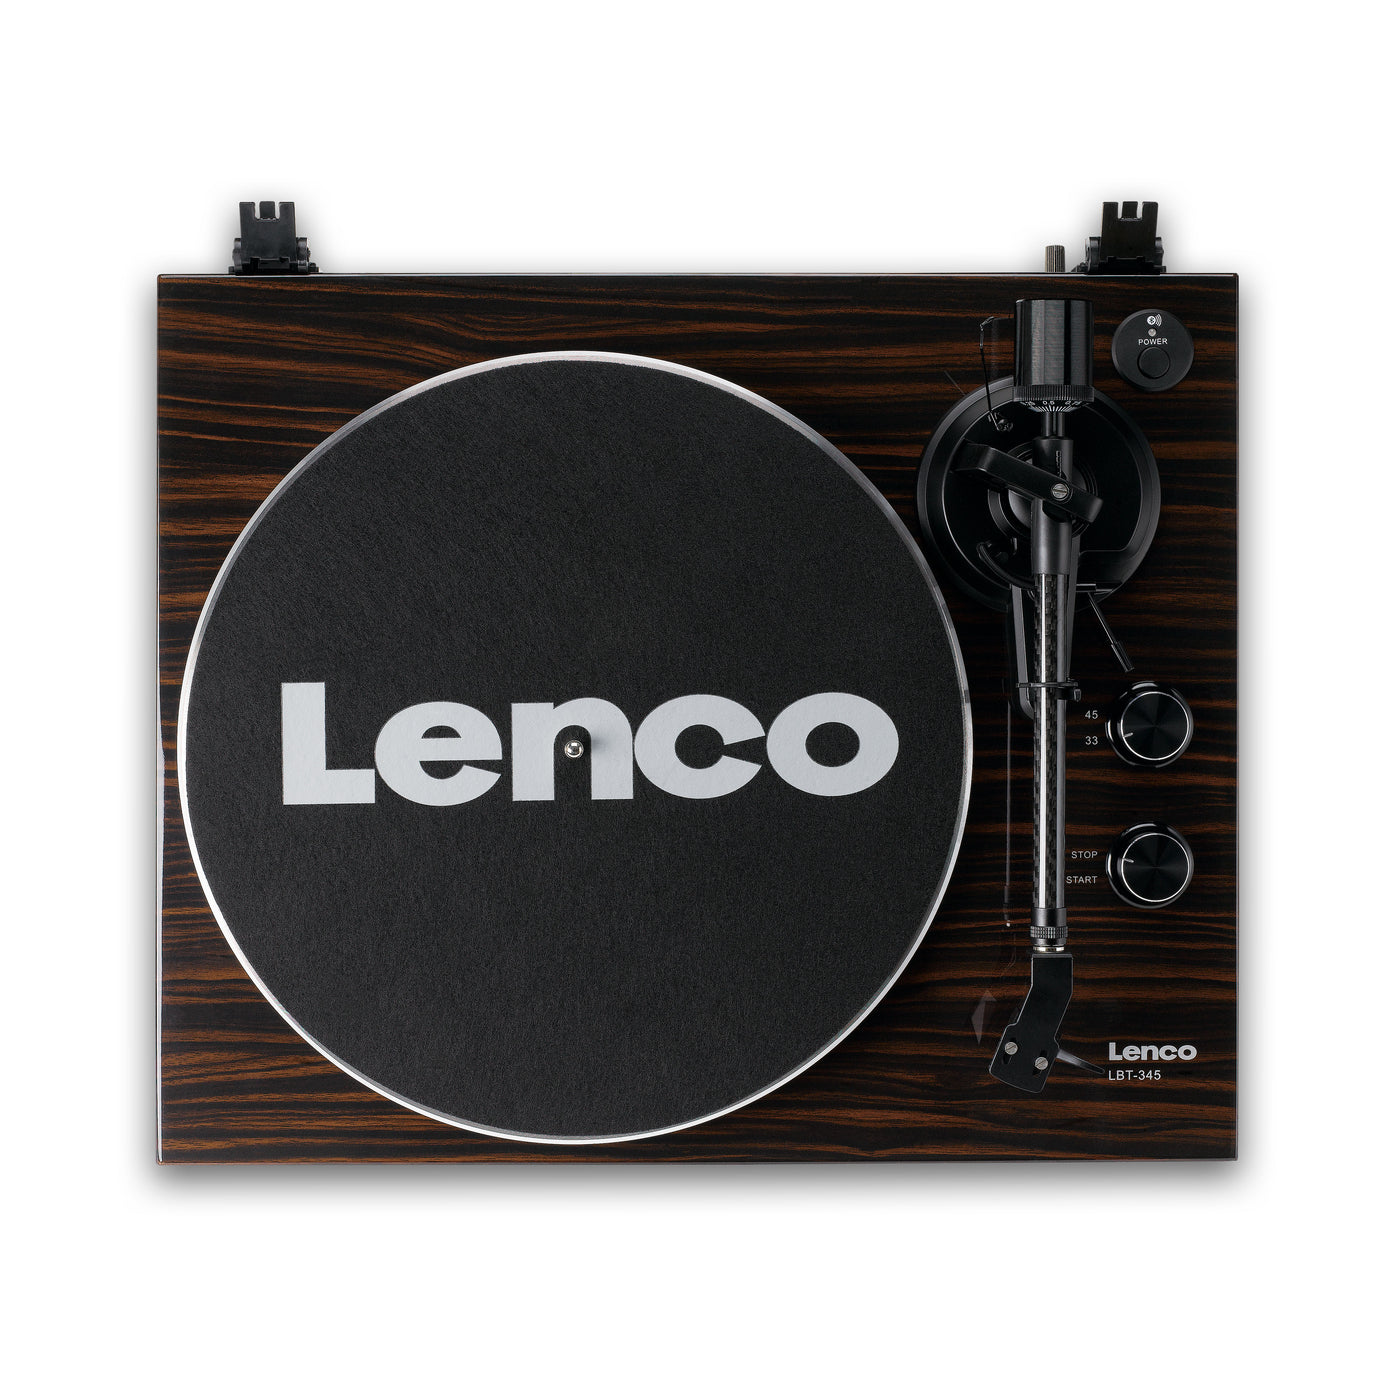 Lenco LBT-345WA - Platine vinyle avec Bluetooth® et cellule Ortofon 2M Red, stabilisateur de plateau chromé inclus - Noyer